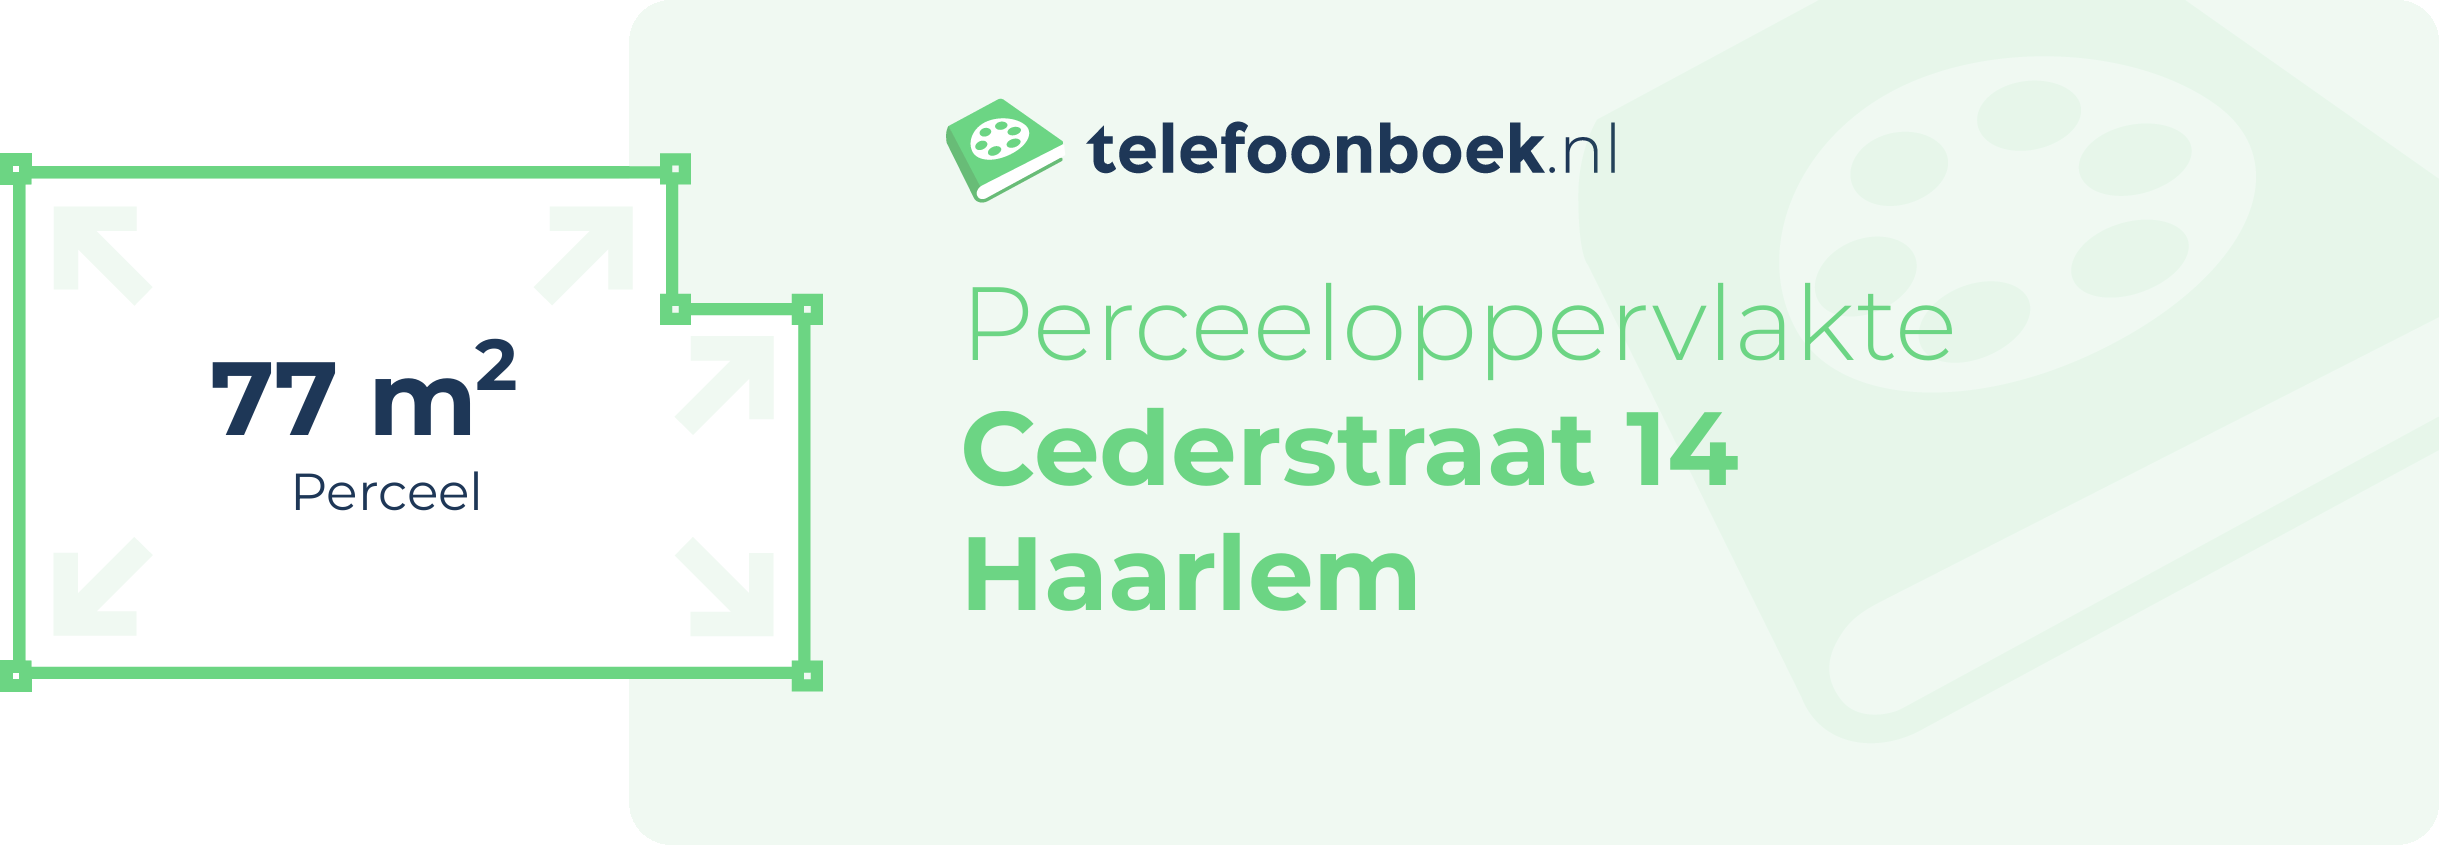 Perceeloppervlakte Cederstraat 14 Haarlem